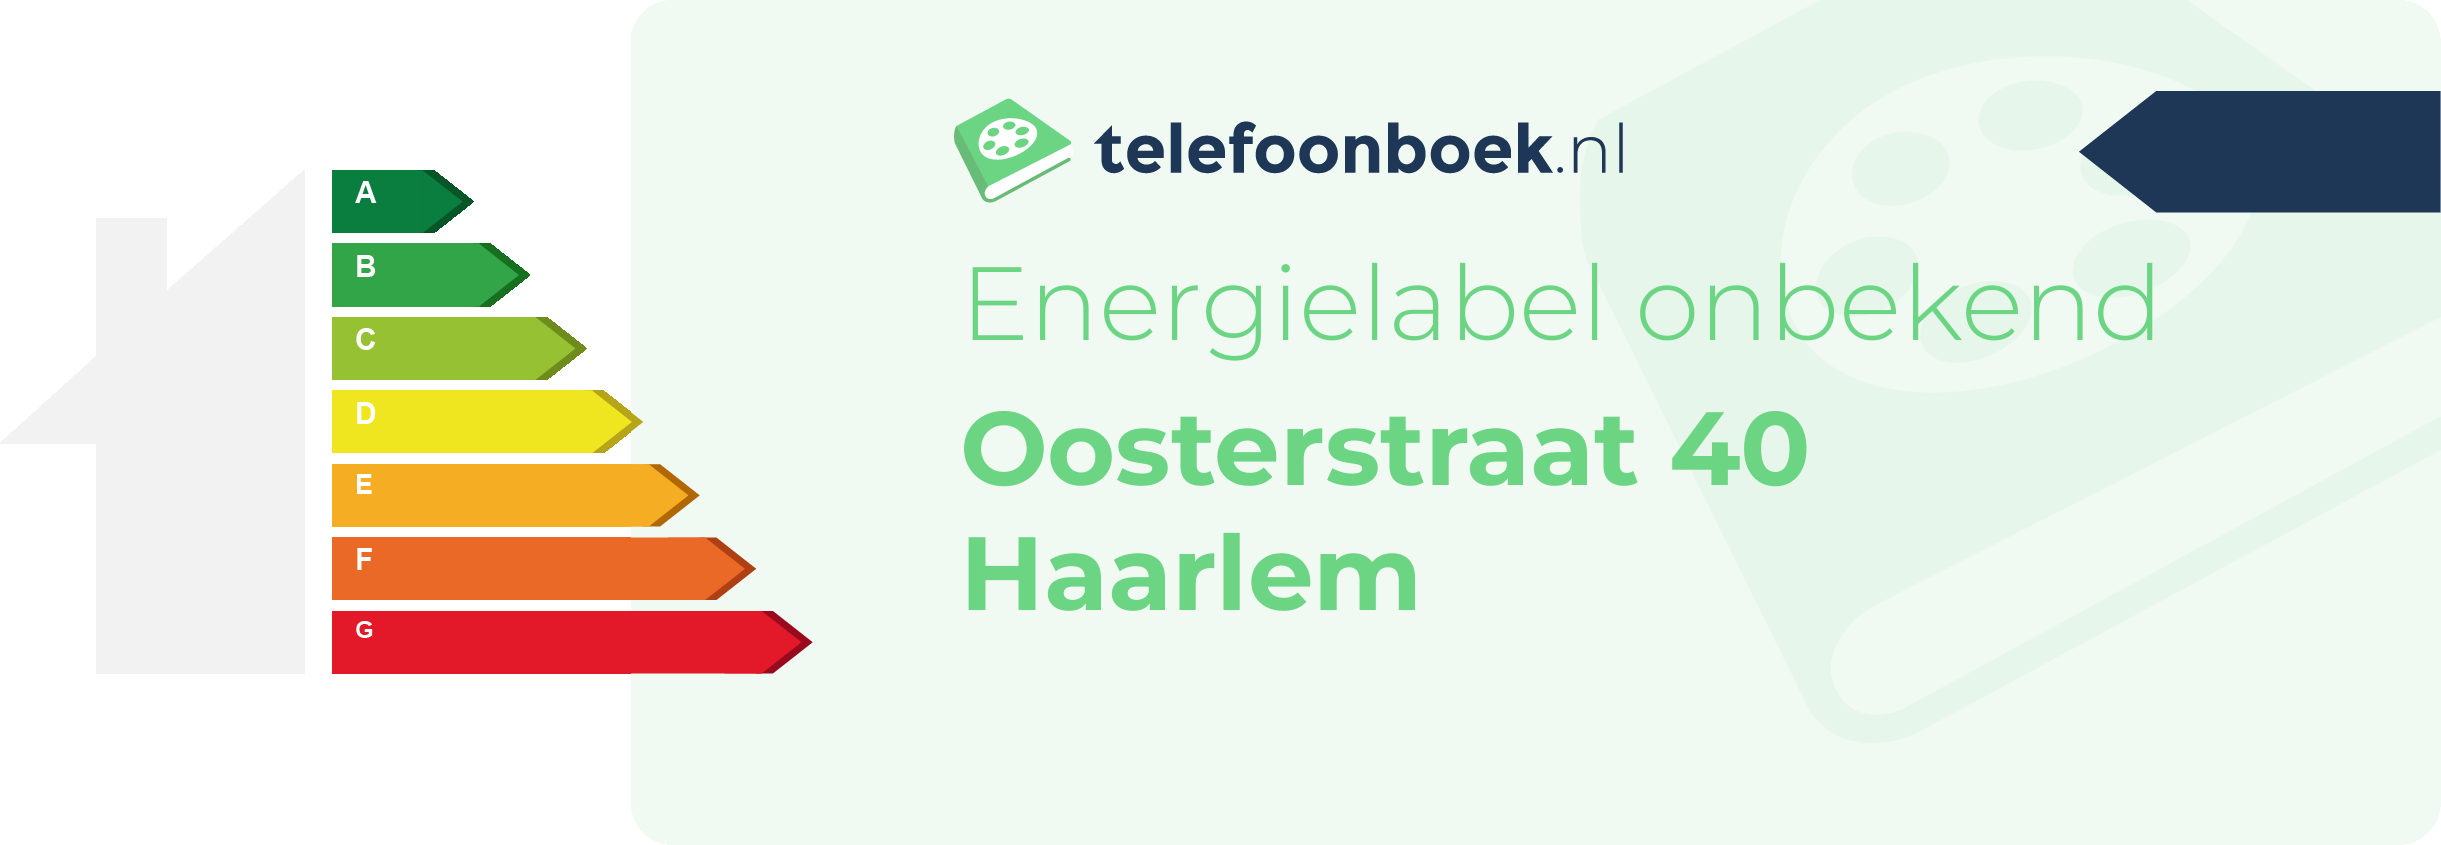 Energielabel Oosterstraat 40 Haarlem